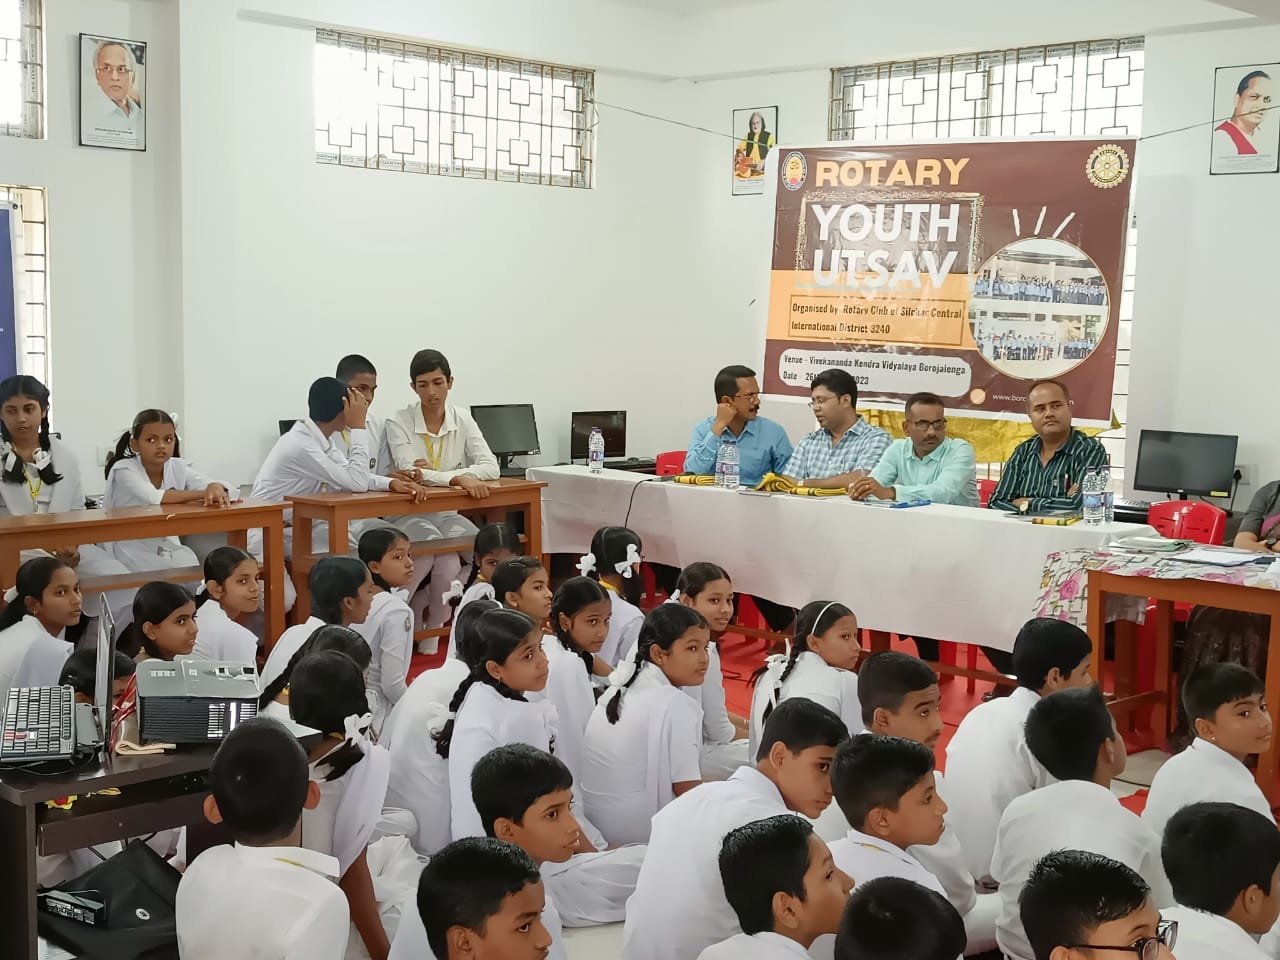 Rotary Youth Utsav